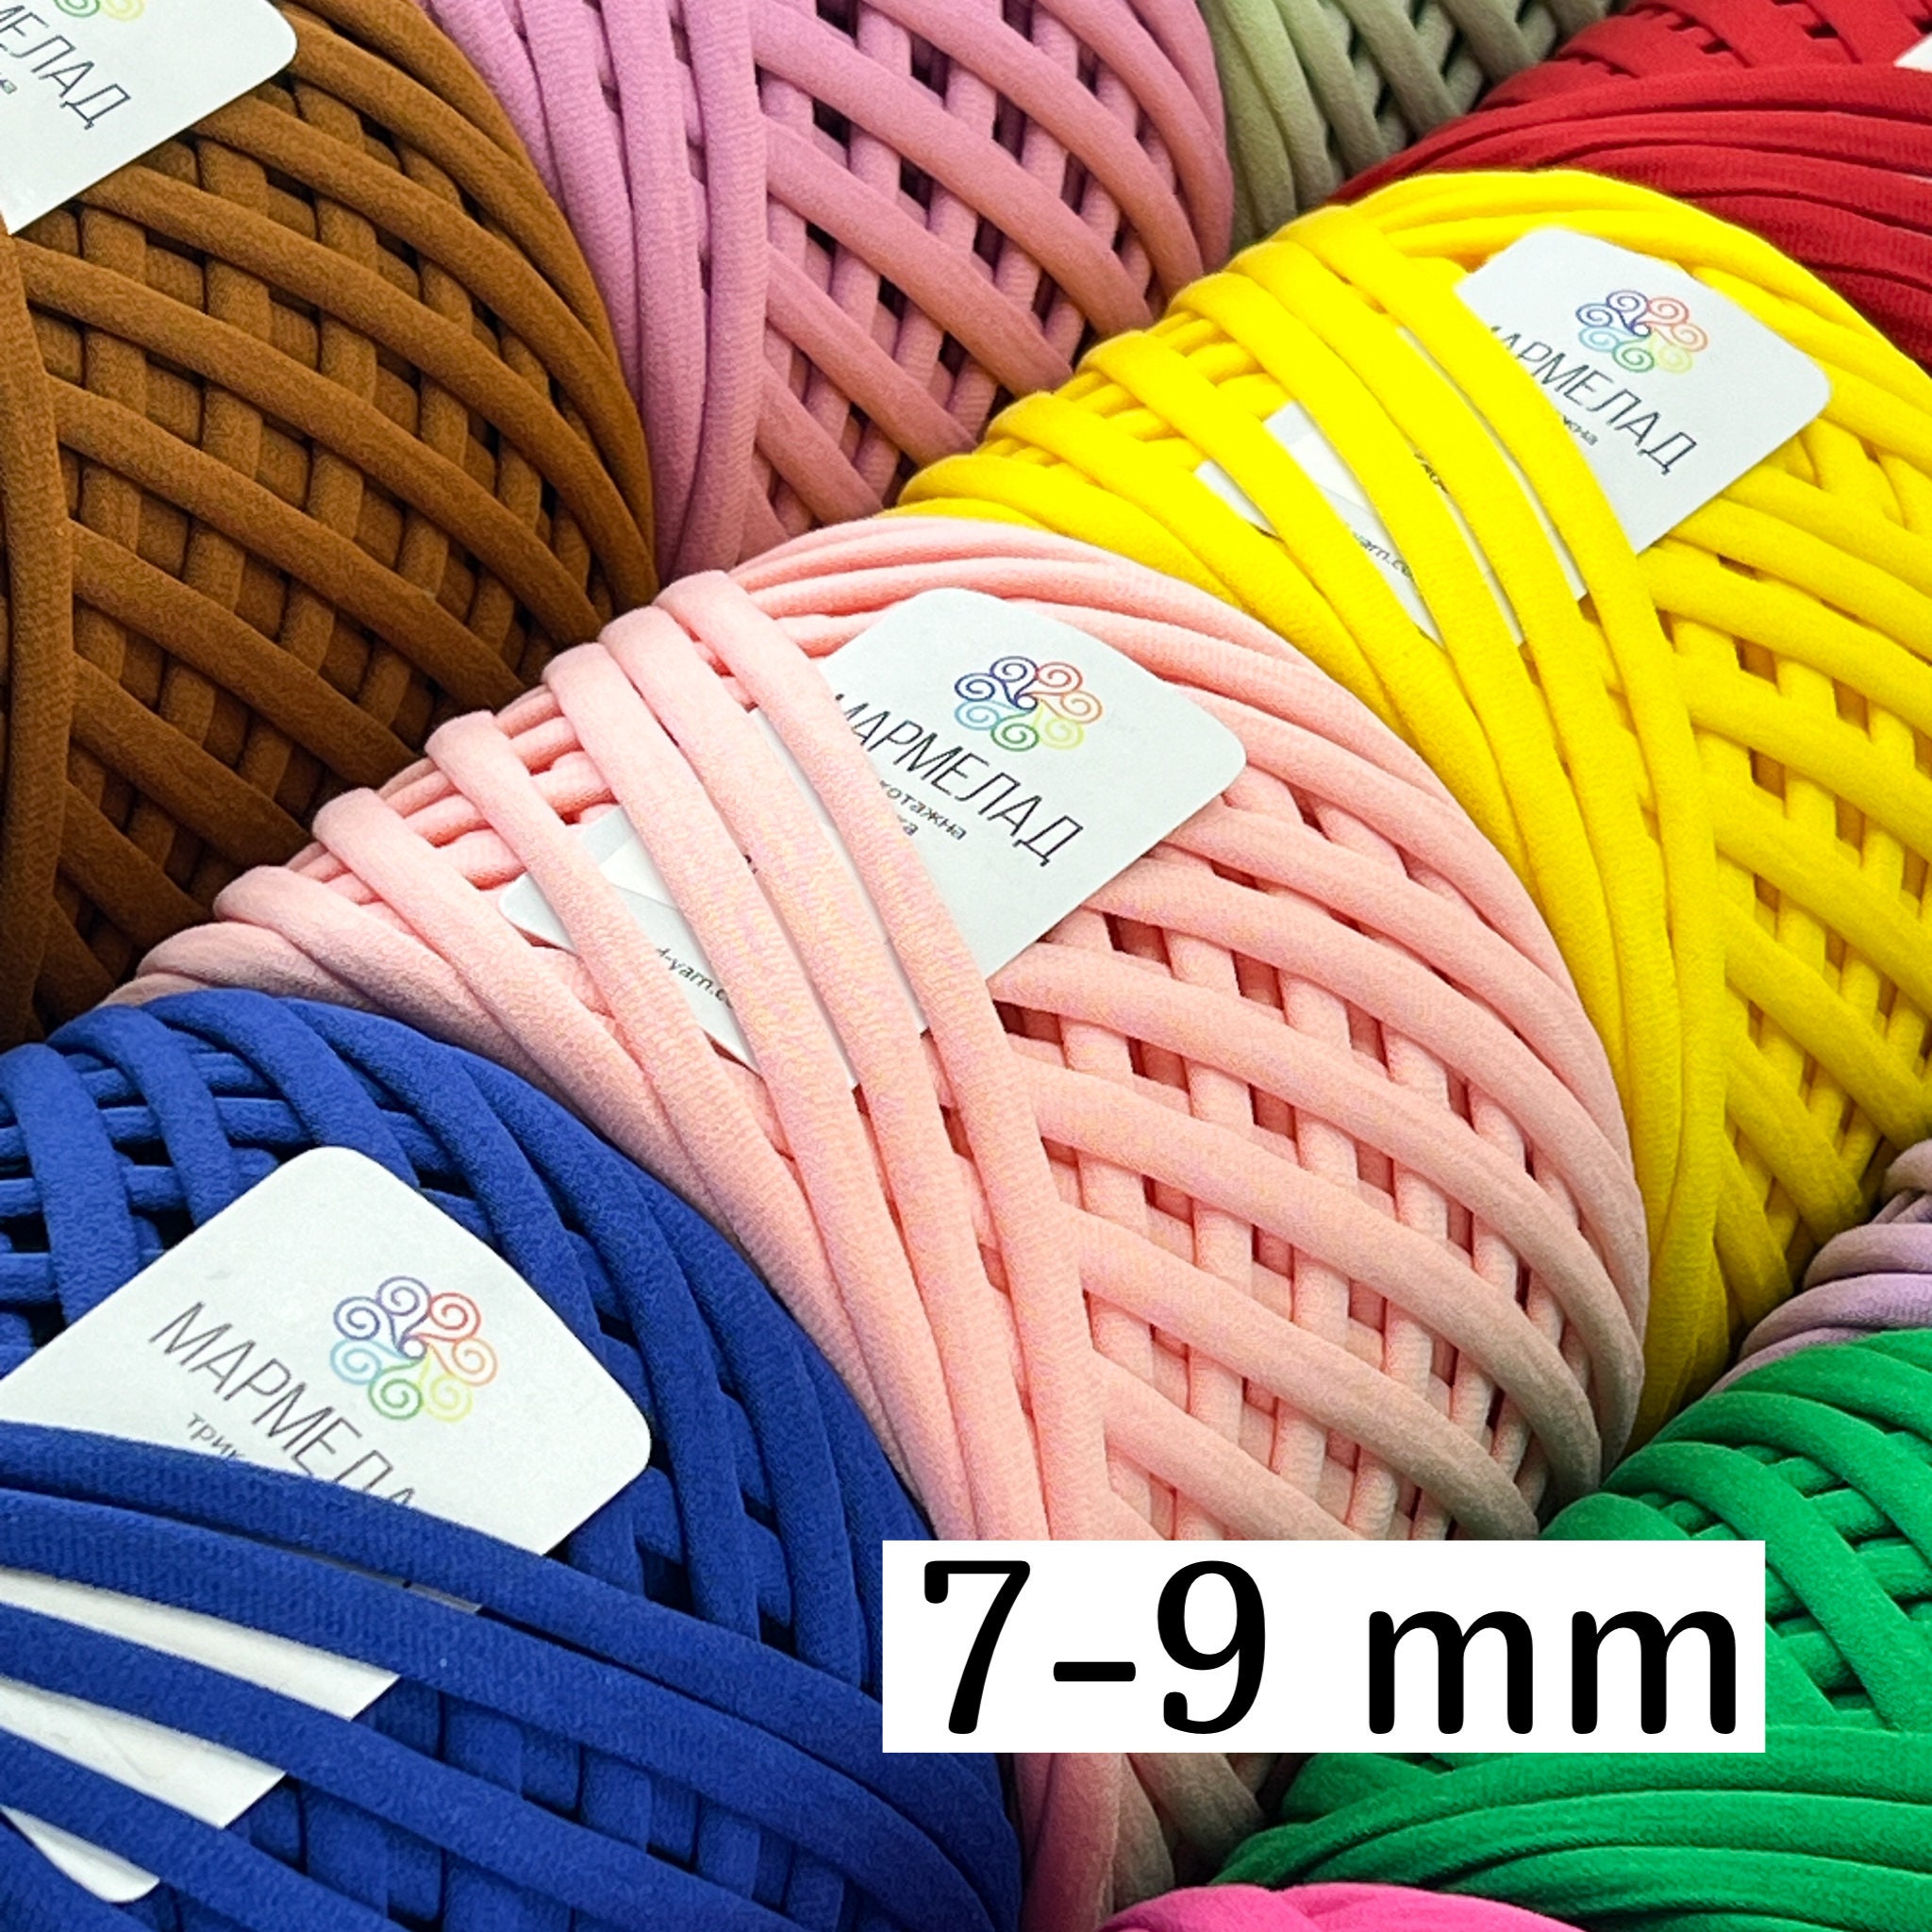 Brand New! Select Size Aluminum Crochet Hooks Select Size 2.5mm, 3mm,  3.5mm, 4mm, 4.5mm, 5mm, 6mm, 6.5mm, 7mm, 8mm, 9mm, 10mm